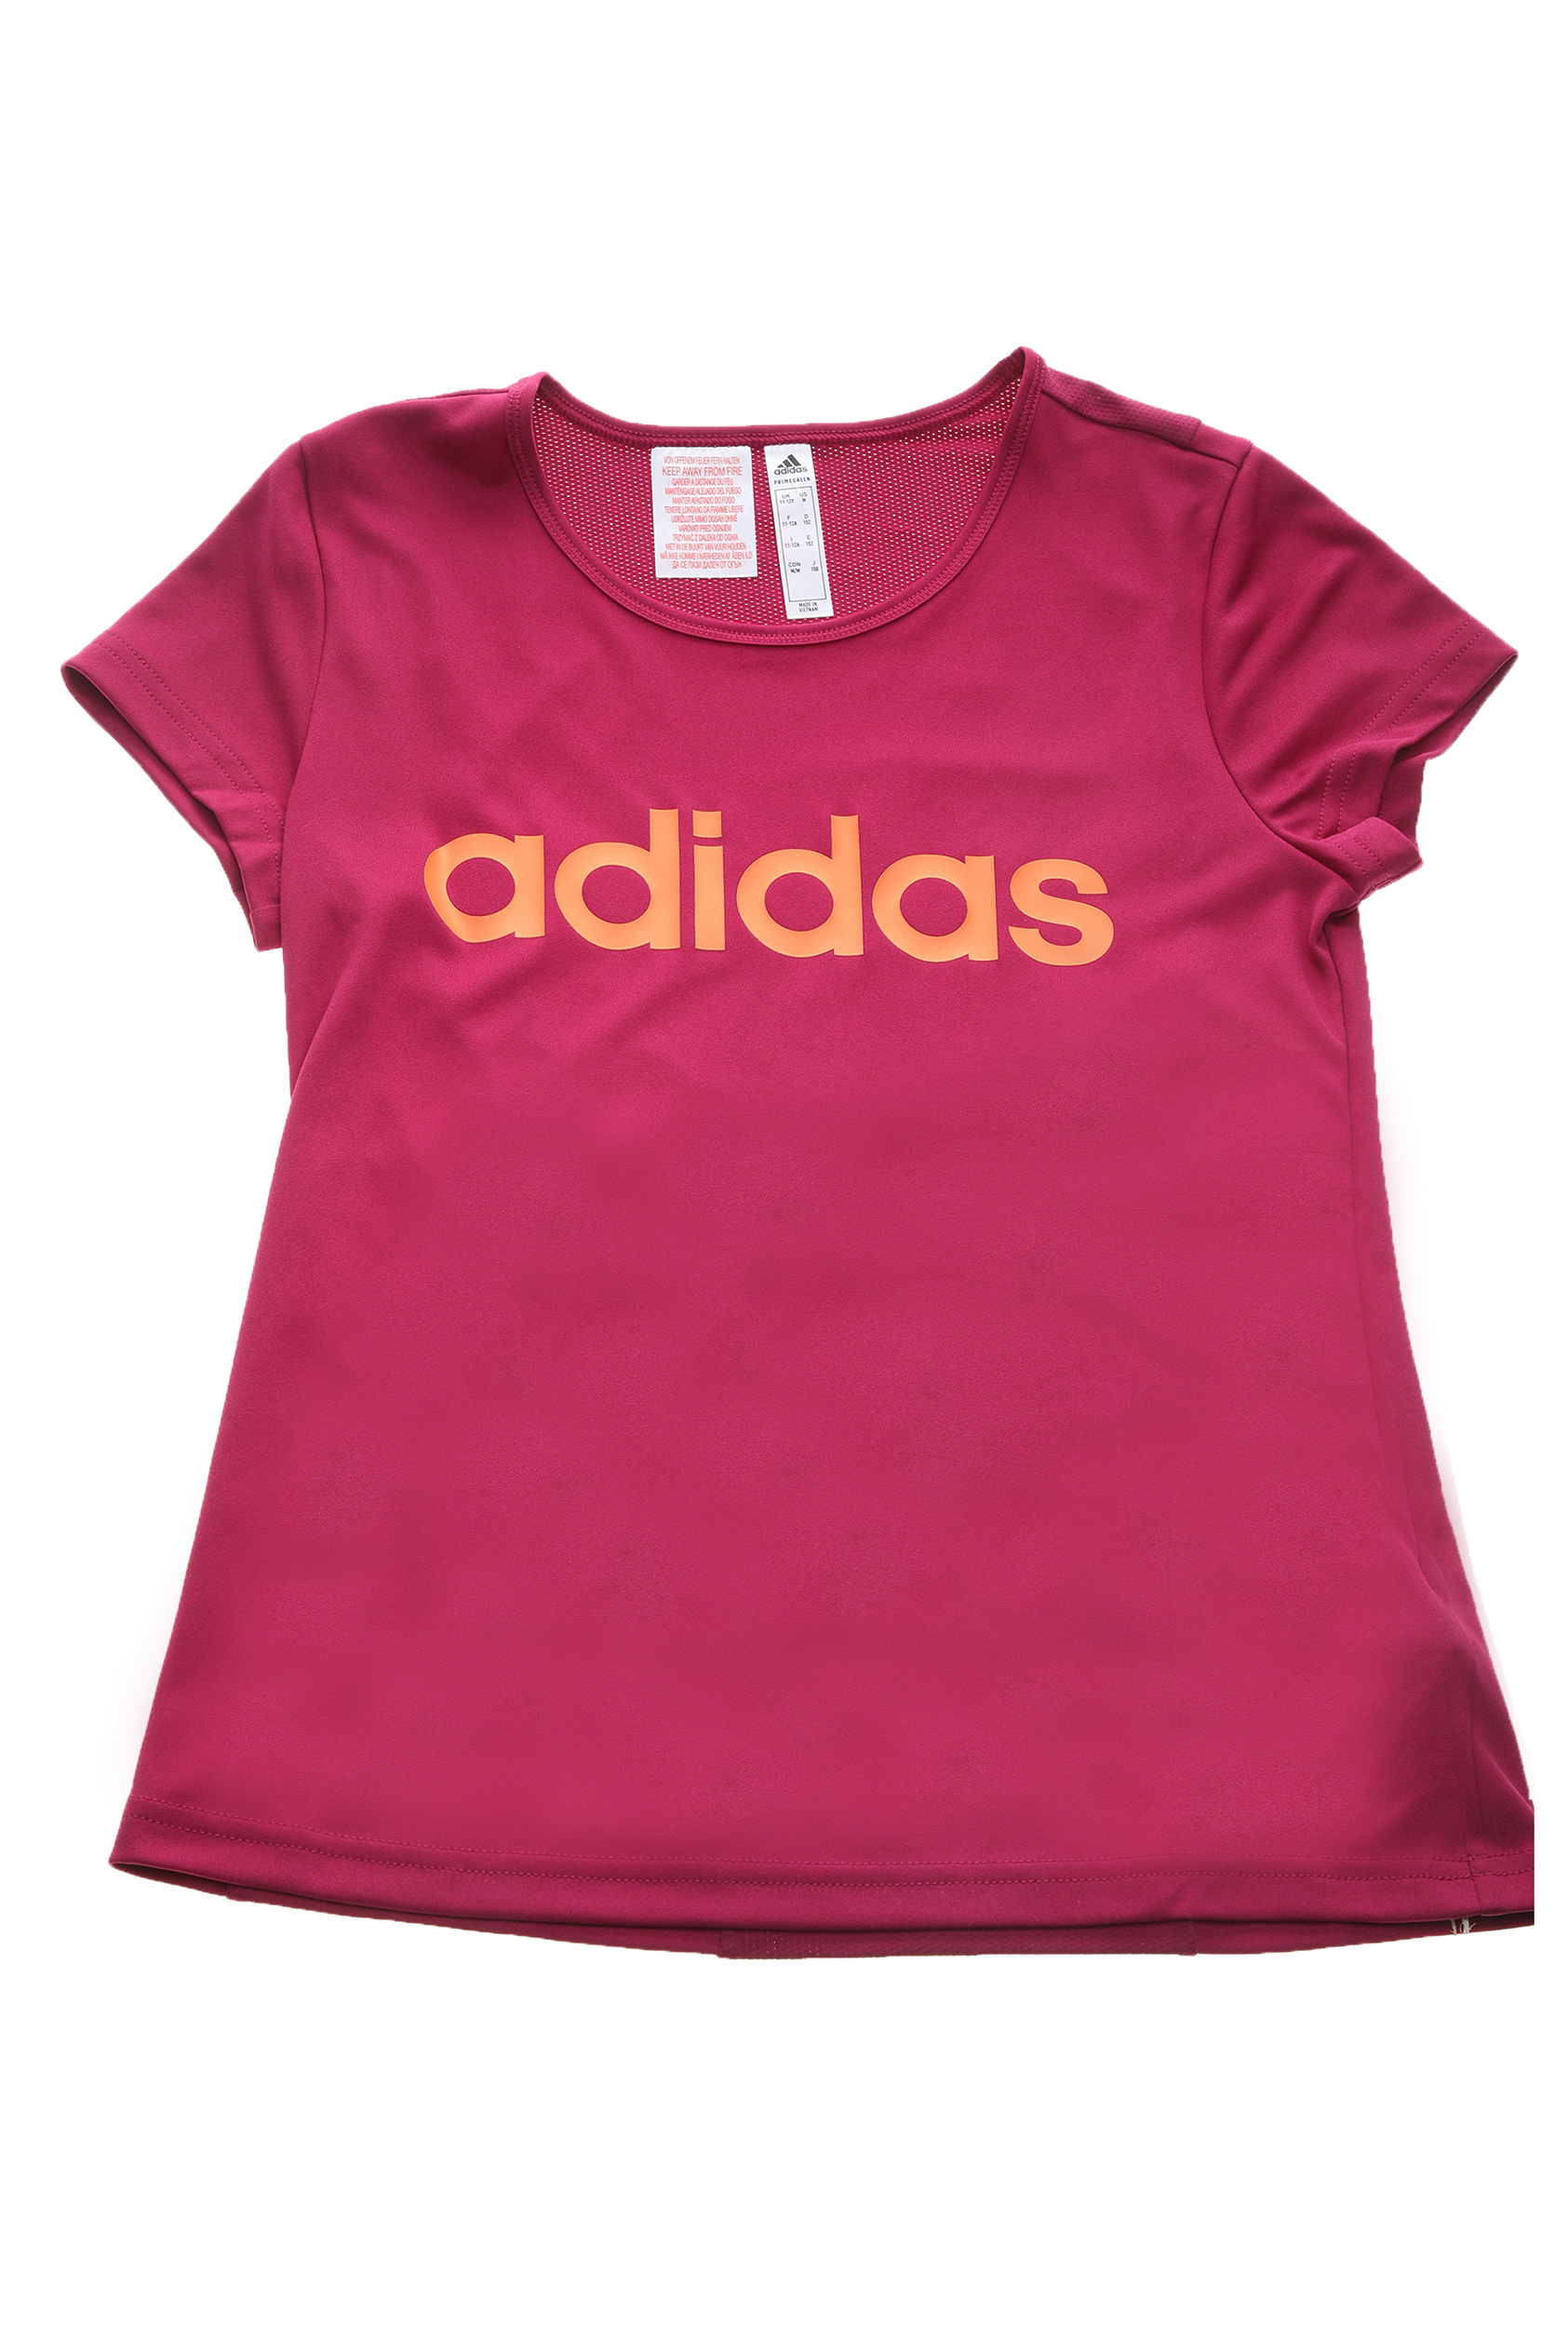 Παιδικά/Girls/Ρούχα/Μπλούζες Κοντομάνικες-Αμάνικες adidas Performance - Παιδική μπλούζα adidas Performance YG C Tee φούξια